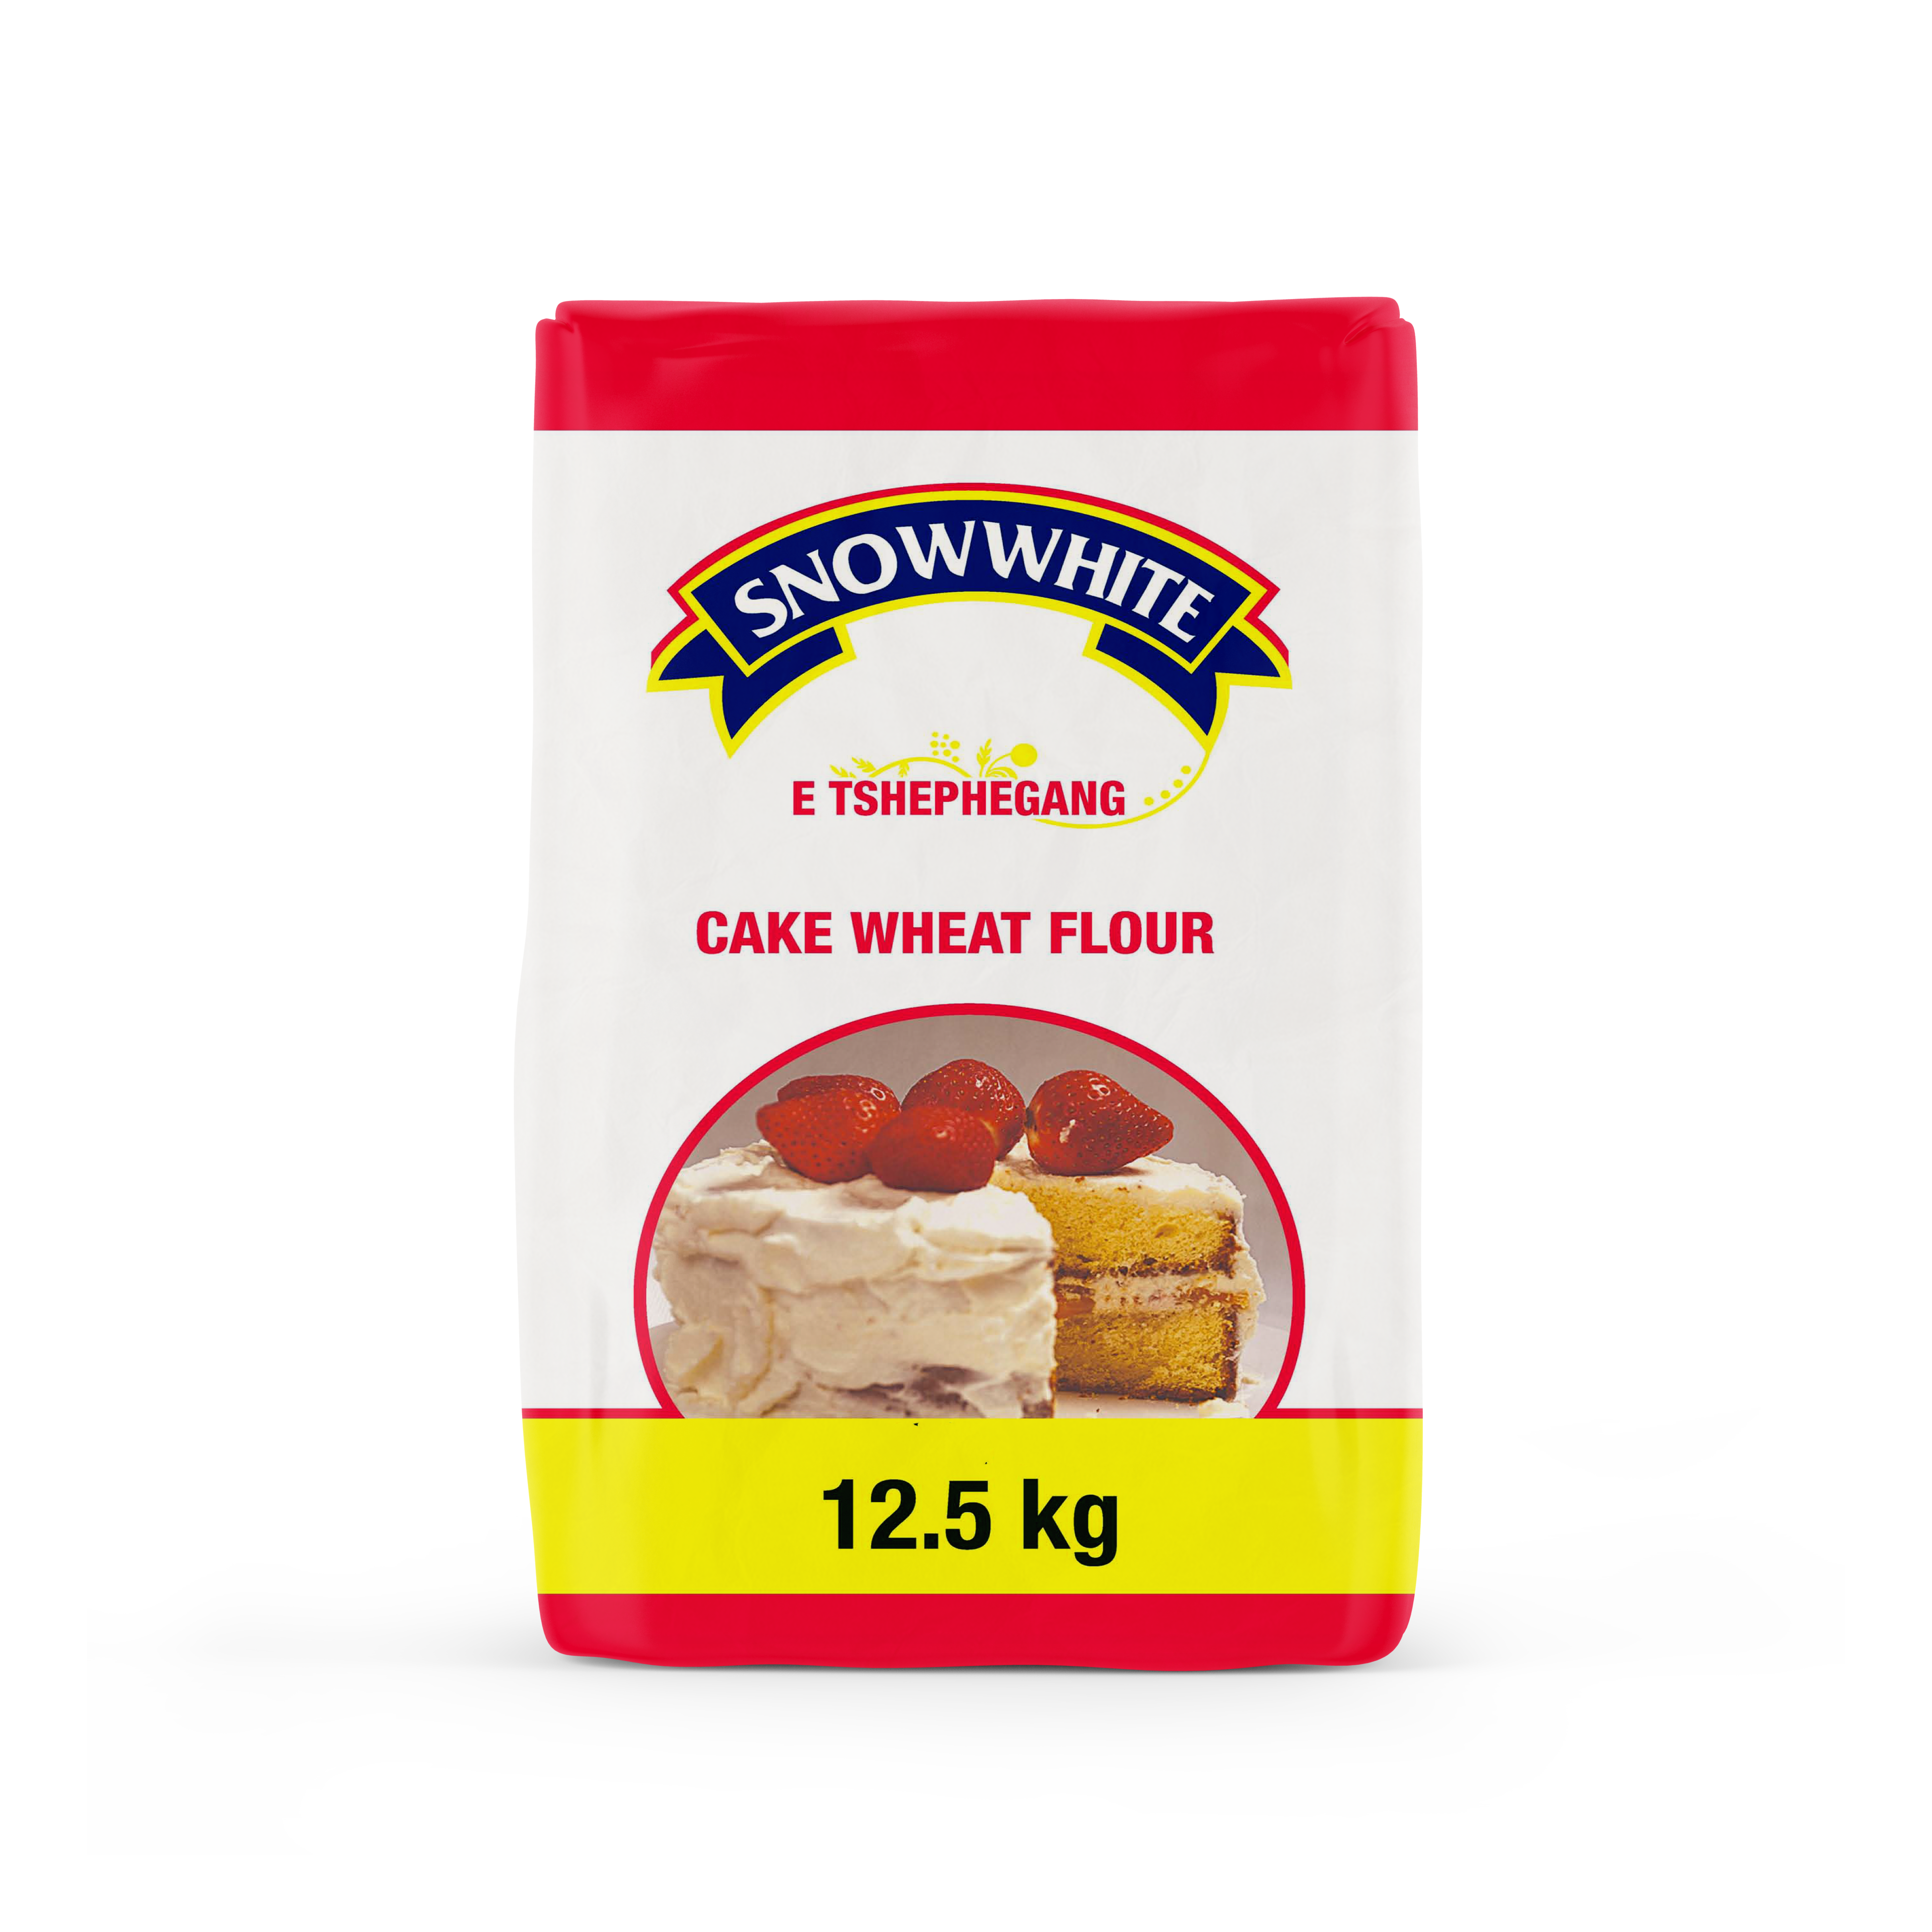 Snowwhite Cake Wheat Flour 12.5 Kg